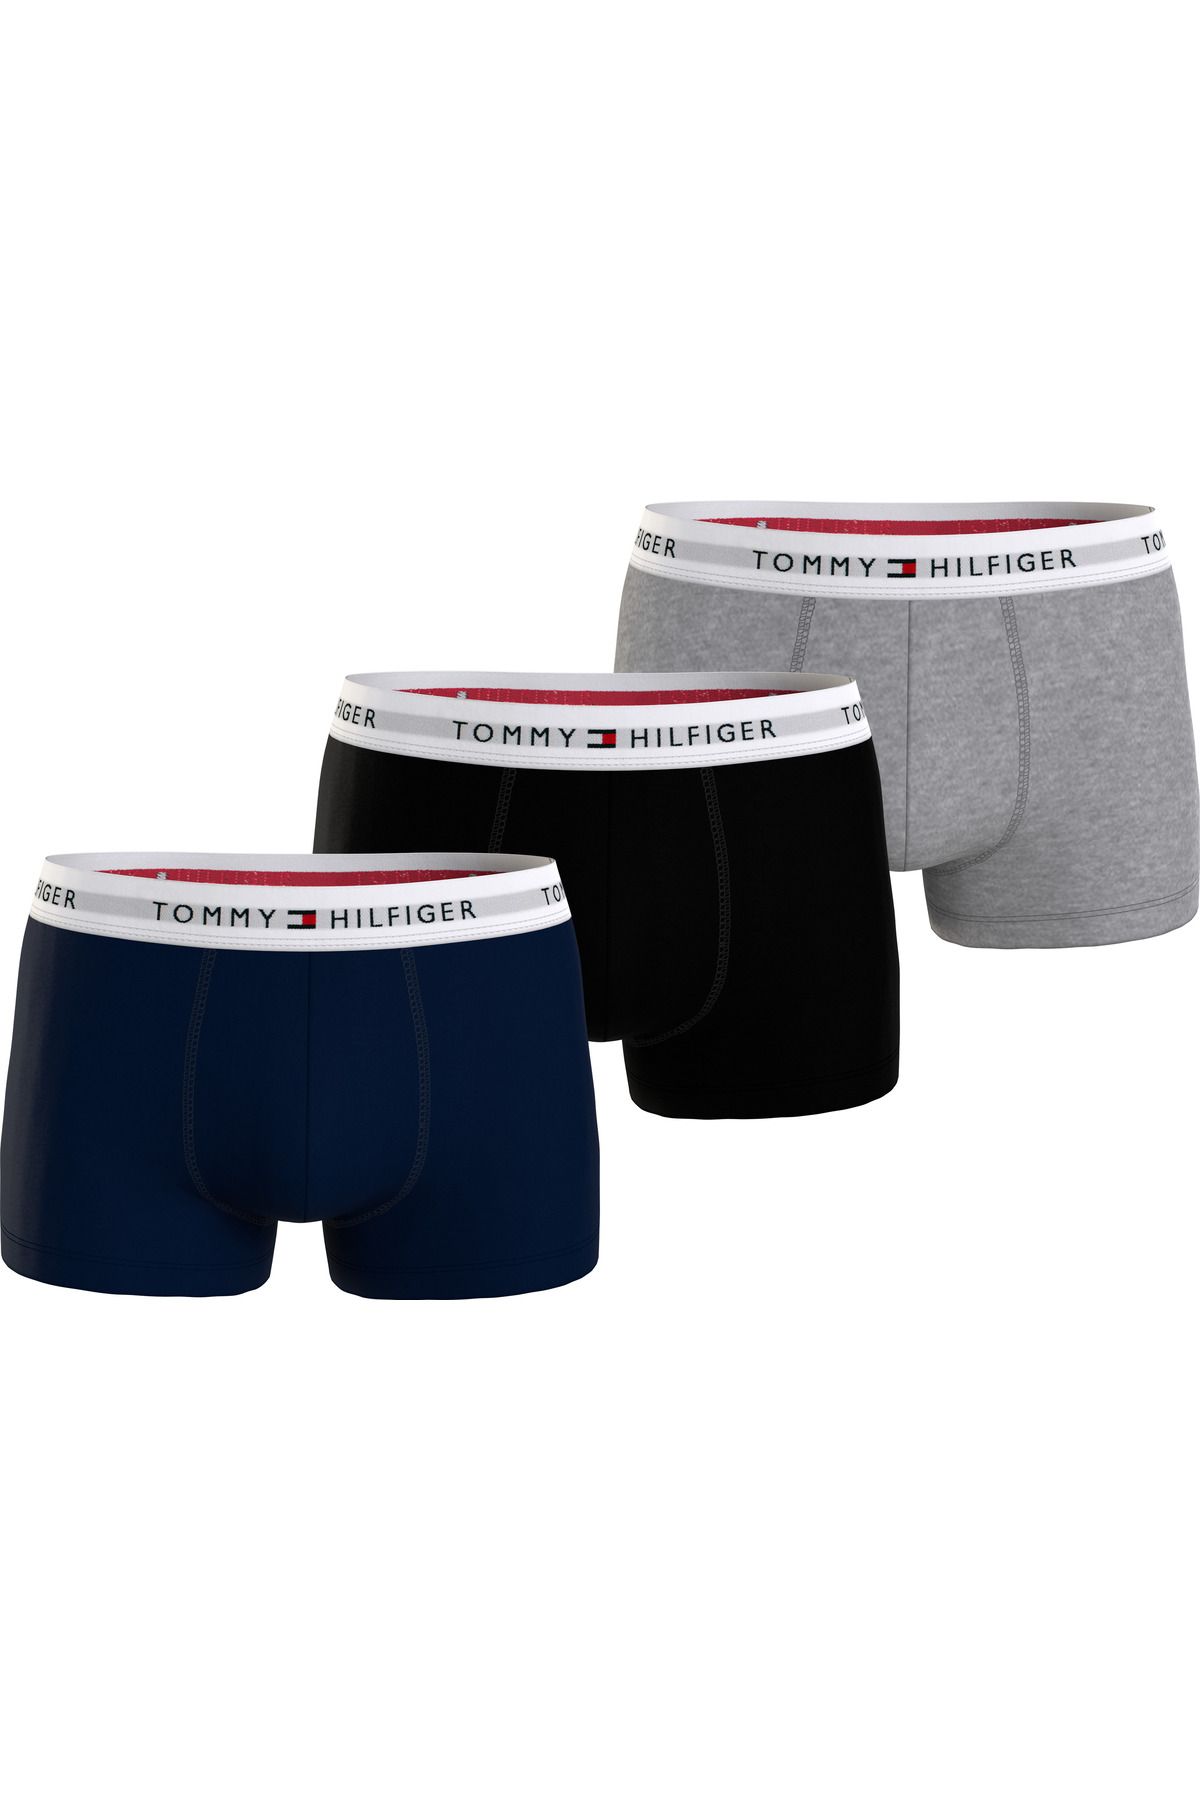 Tommy Hilfiger Erkek Marka Logolu Elastik Bantlı Günlük Kullanıma Uygun Lacivert-Gri-Siyah Boxer UM0UM02761-0YV